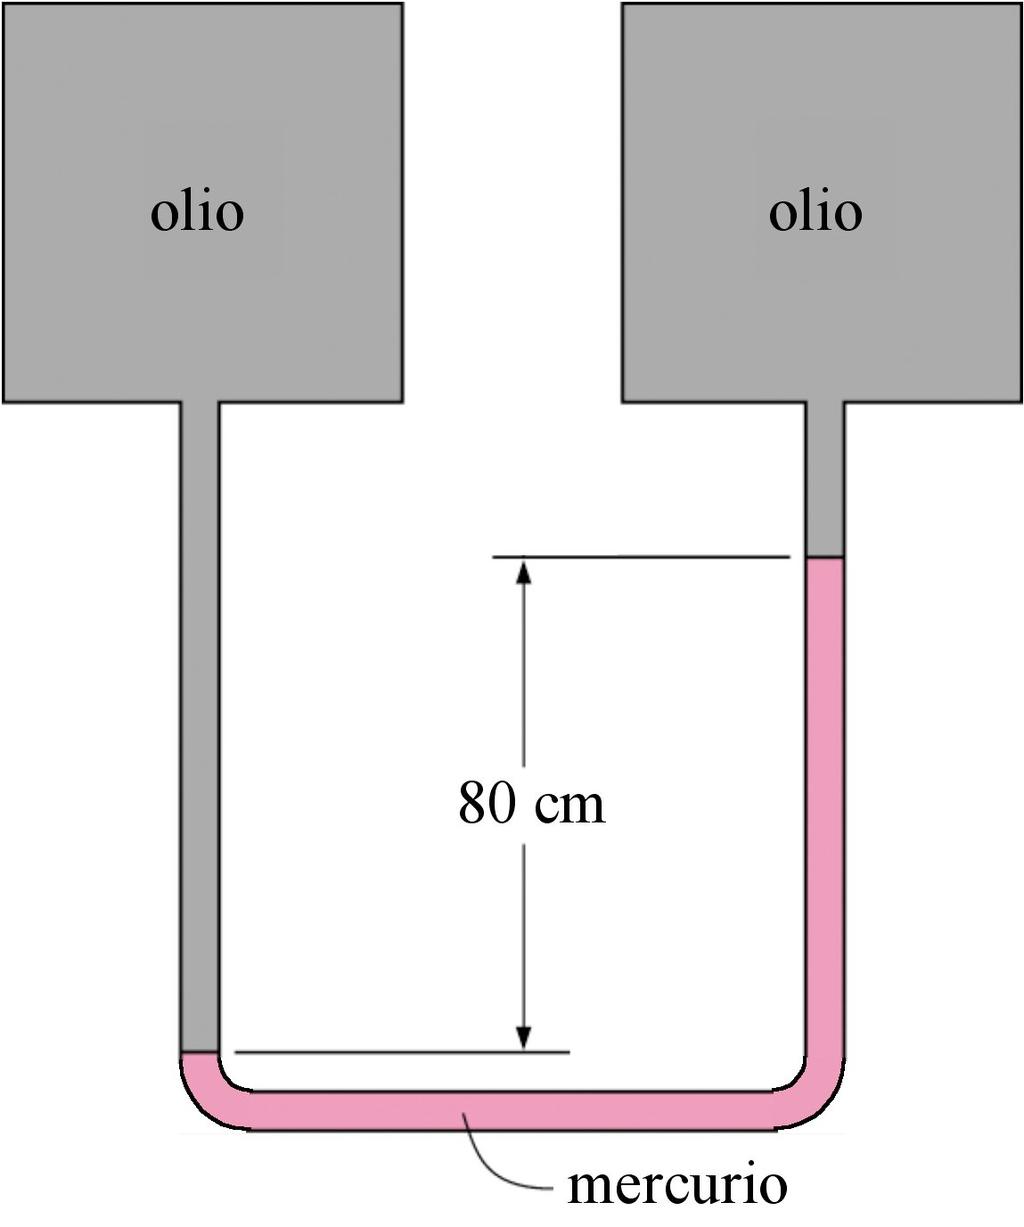 3.33 Con l elevatore idraulico di figura si deve sollevare un carico di 500 kg versando olio (ρ = 780 kg/m 3 ) nel tubicino.